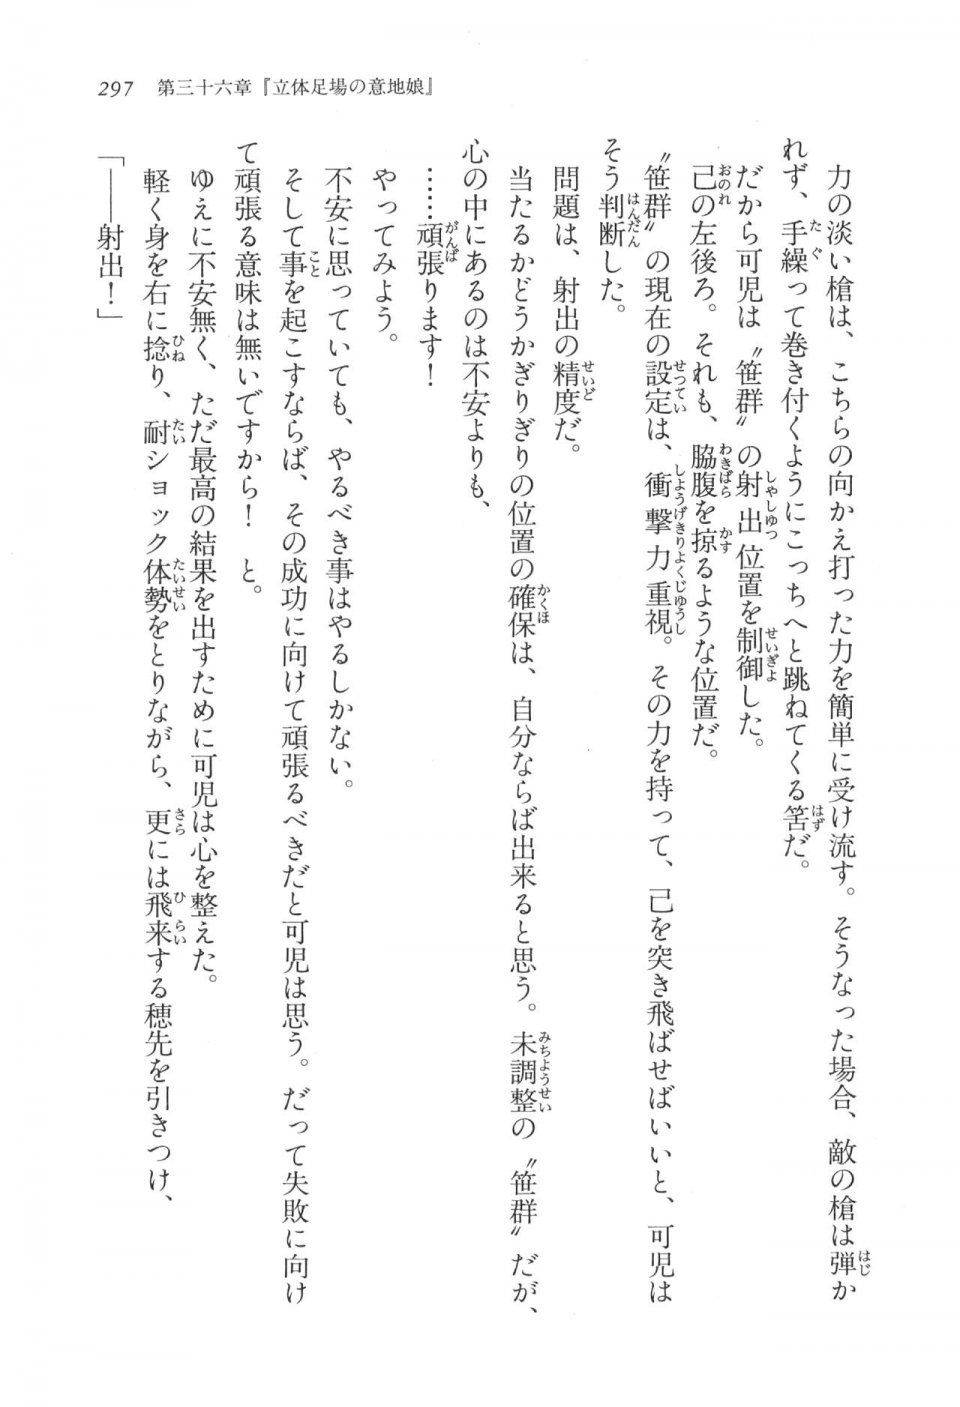 Kyoukai Senjou no Horizon LN Vol 17(7B) - Photo #297